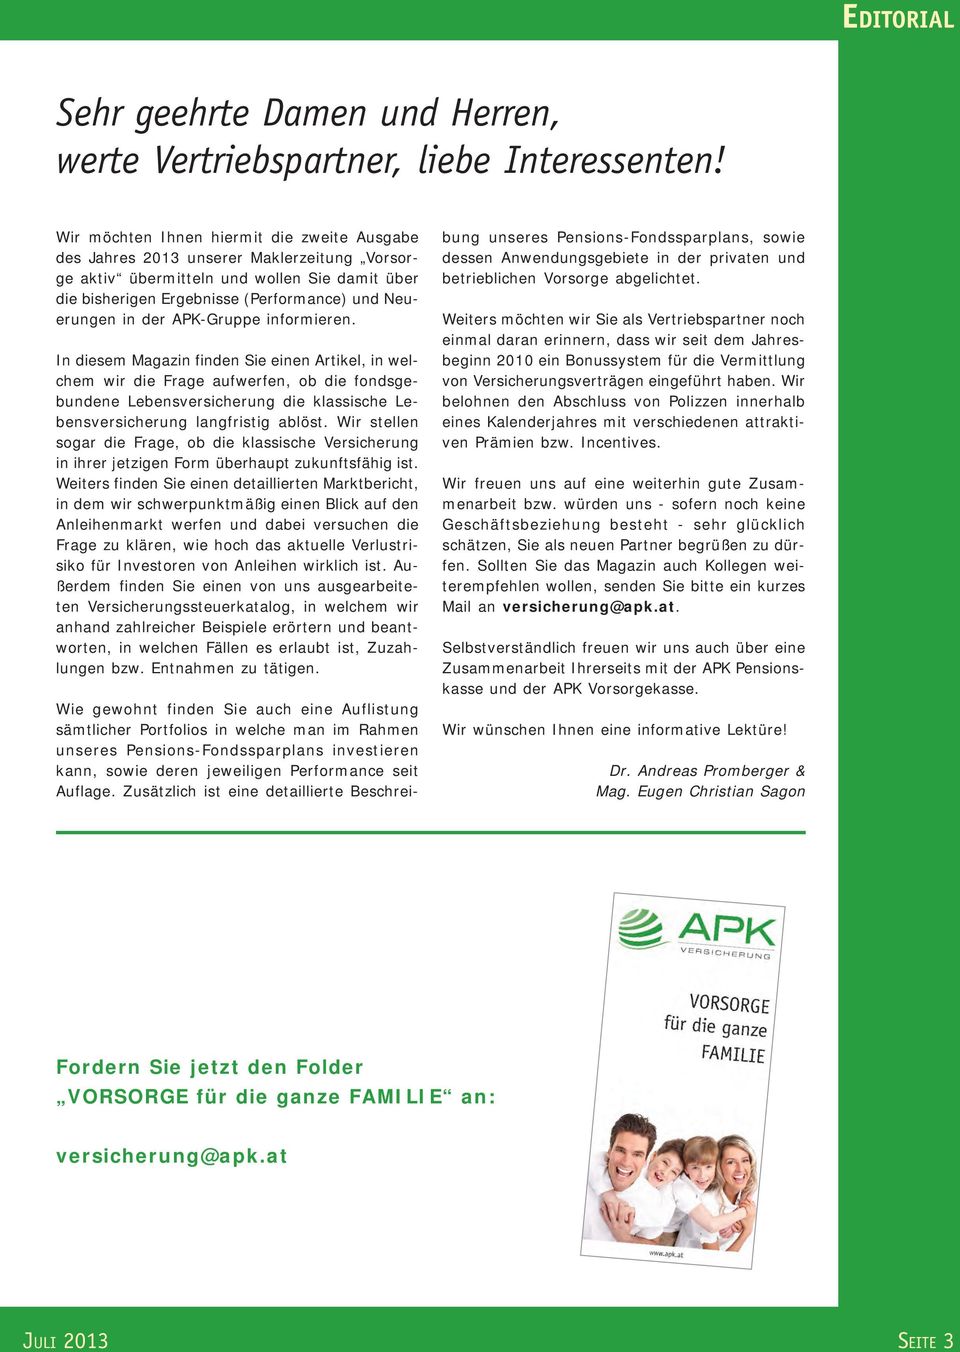 APK-Gruppe informieren. In diesem Magazin finden Sie einen Artikel, in welchem wir die Frage aufwerfen, ob die fondsgebundene Lebensversicherung die klassische Lebensversicherung langfristig ablöst.